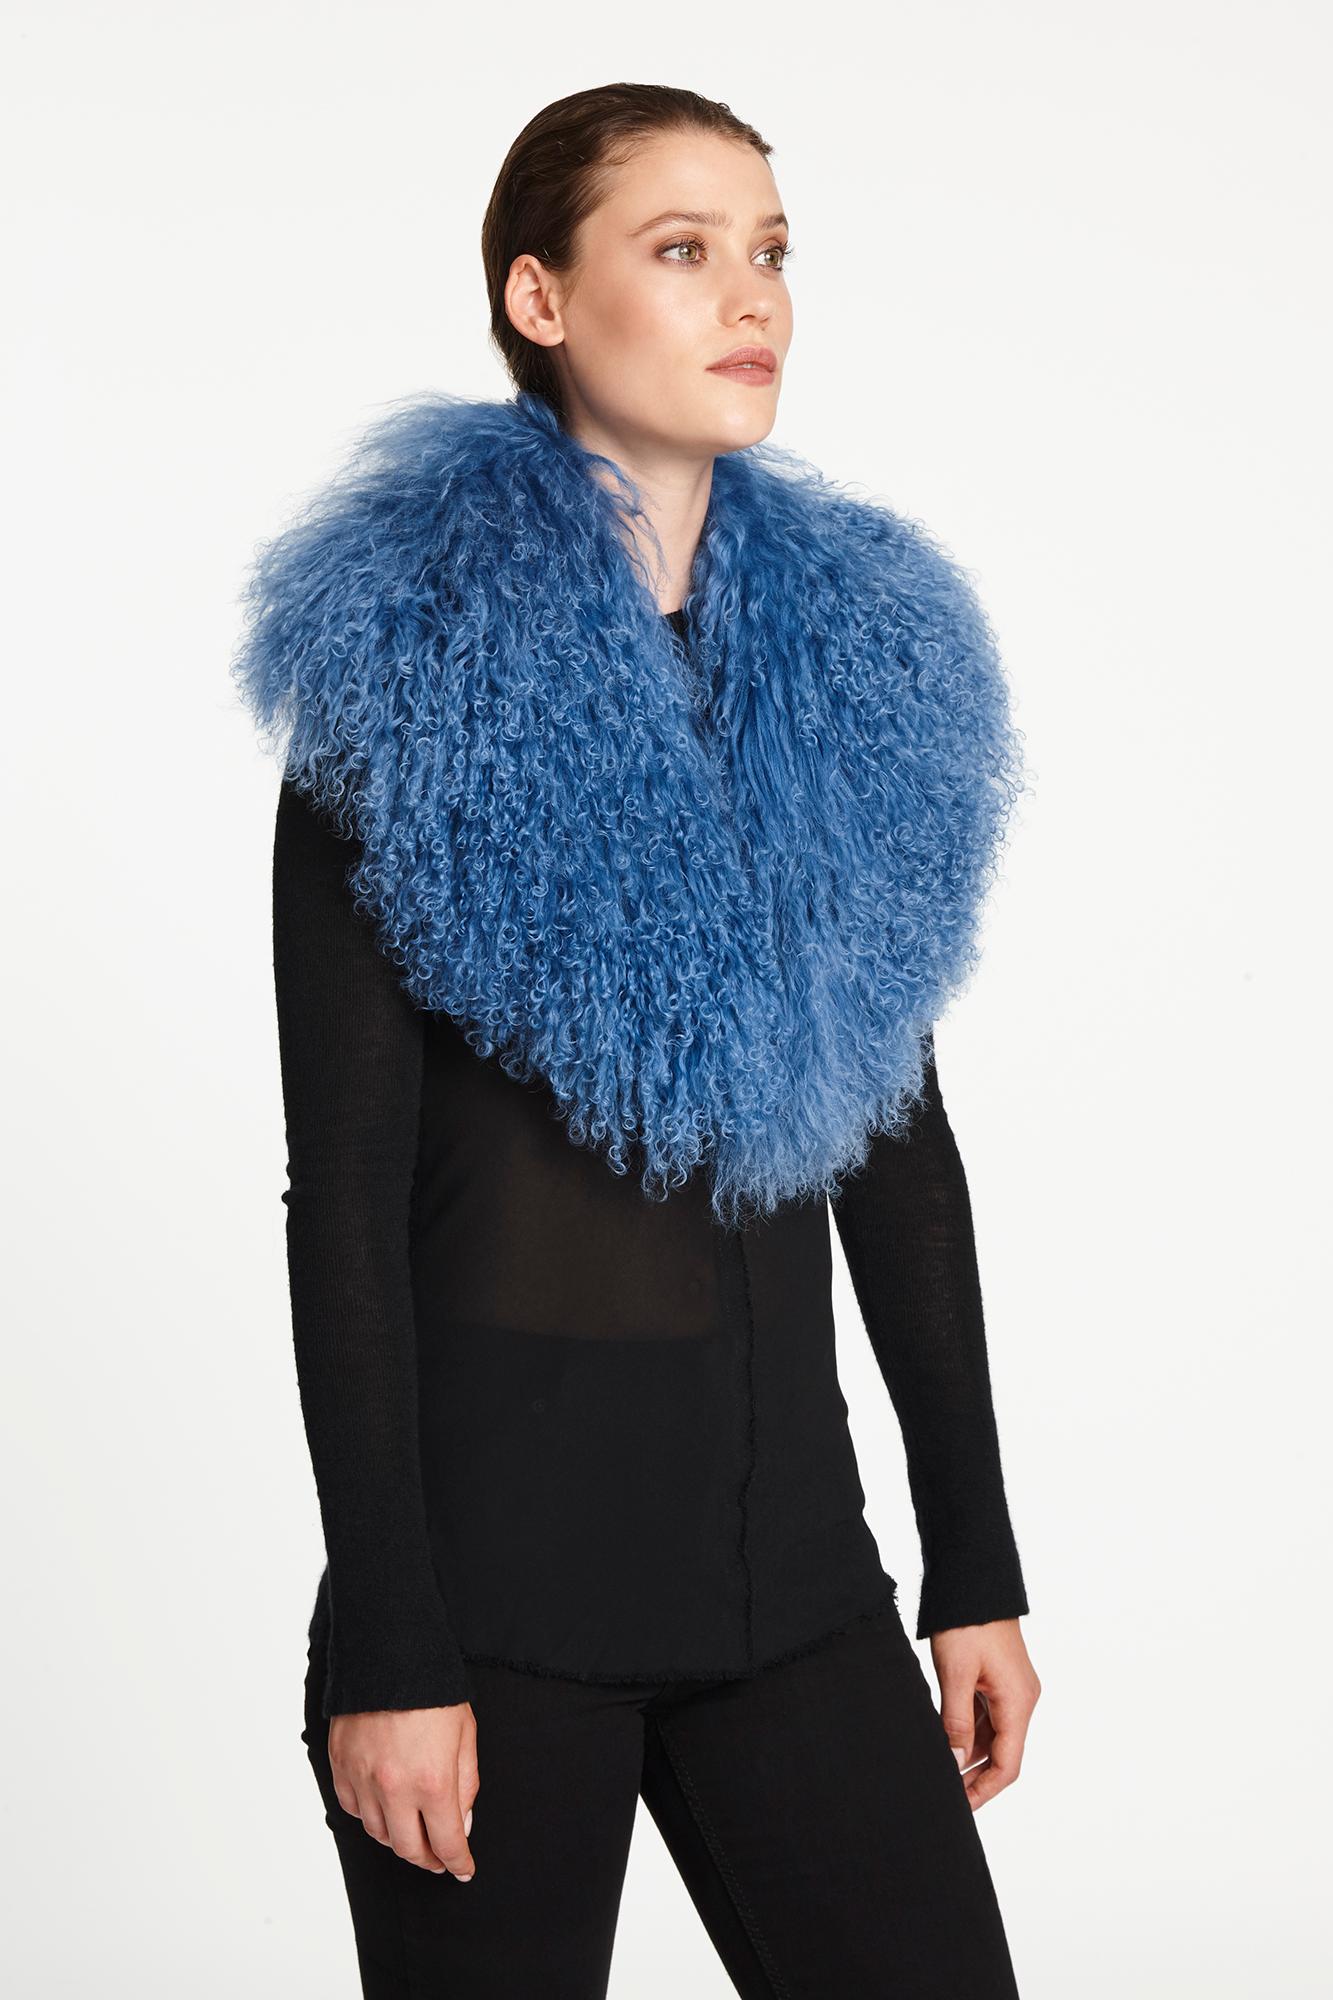 Verheyen London Shawl Collar in Blue Topaz Mongolian Lamb Fur lined in silk   2